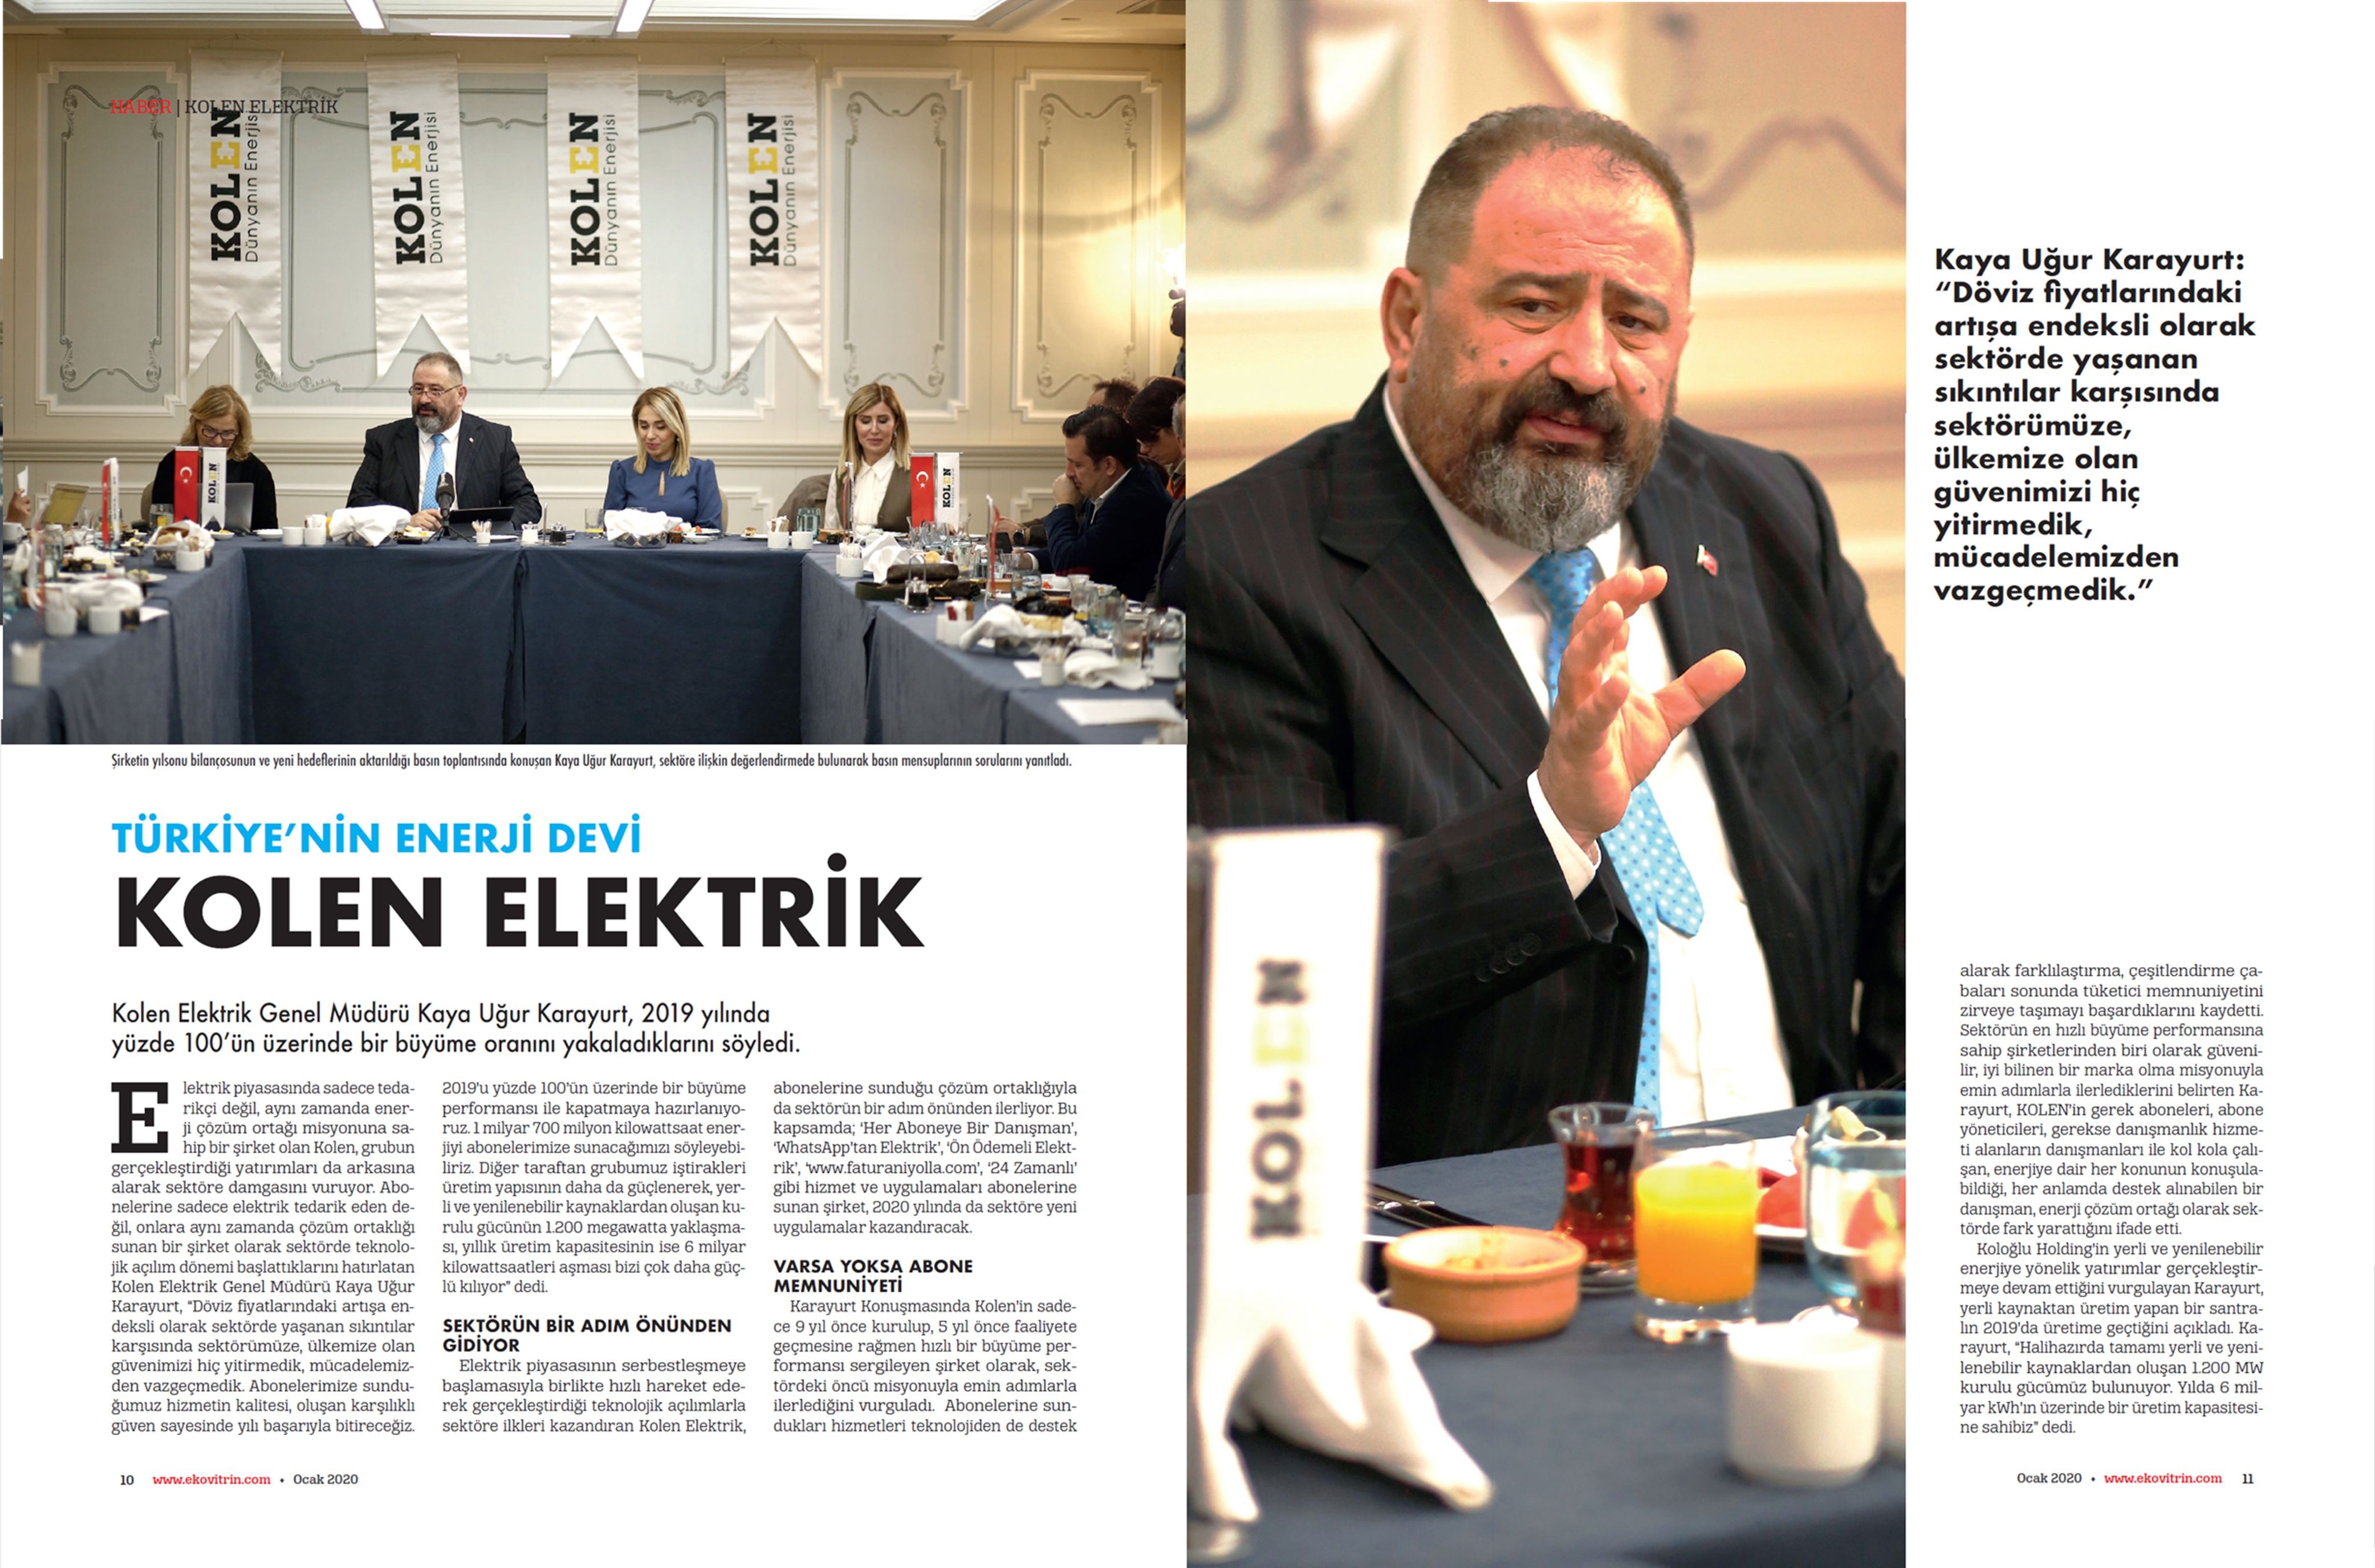 Türkiye’nin Enerji Devi Kolen Elektrik [Ekovitrin Dergisi]